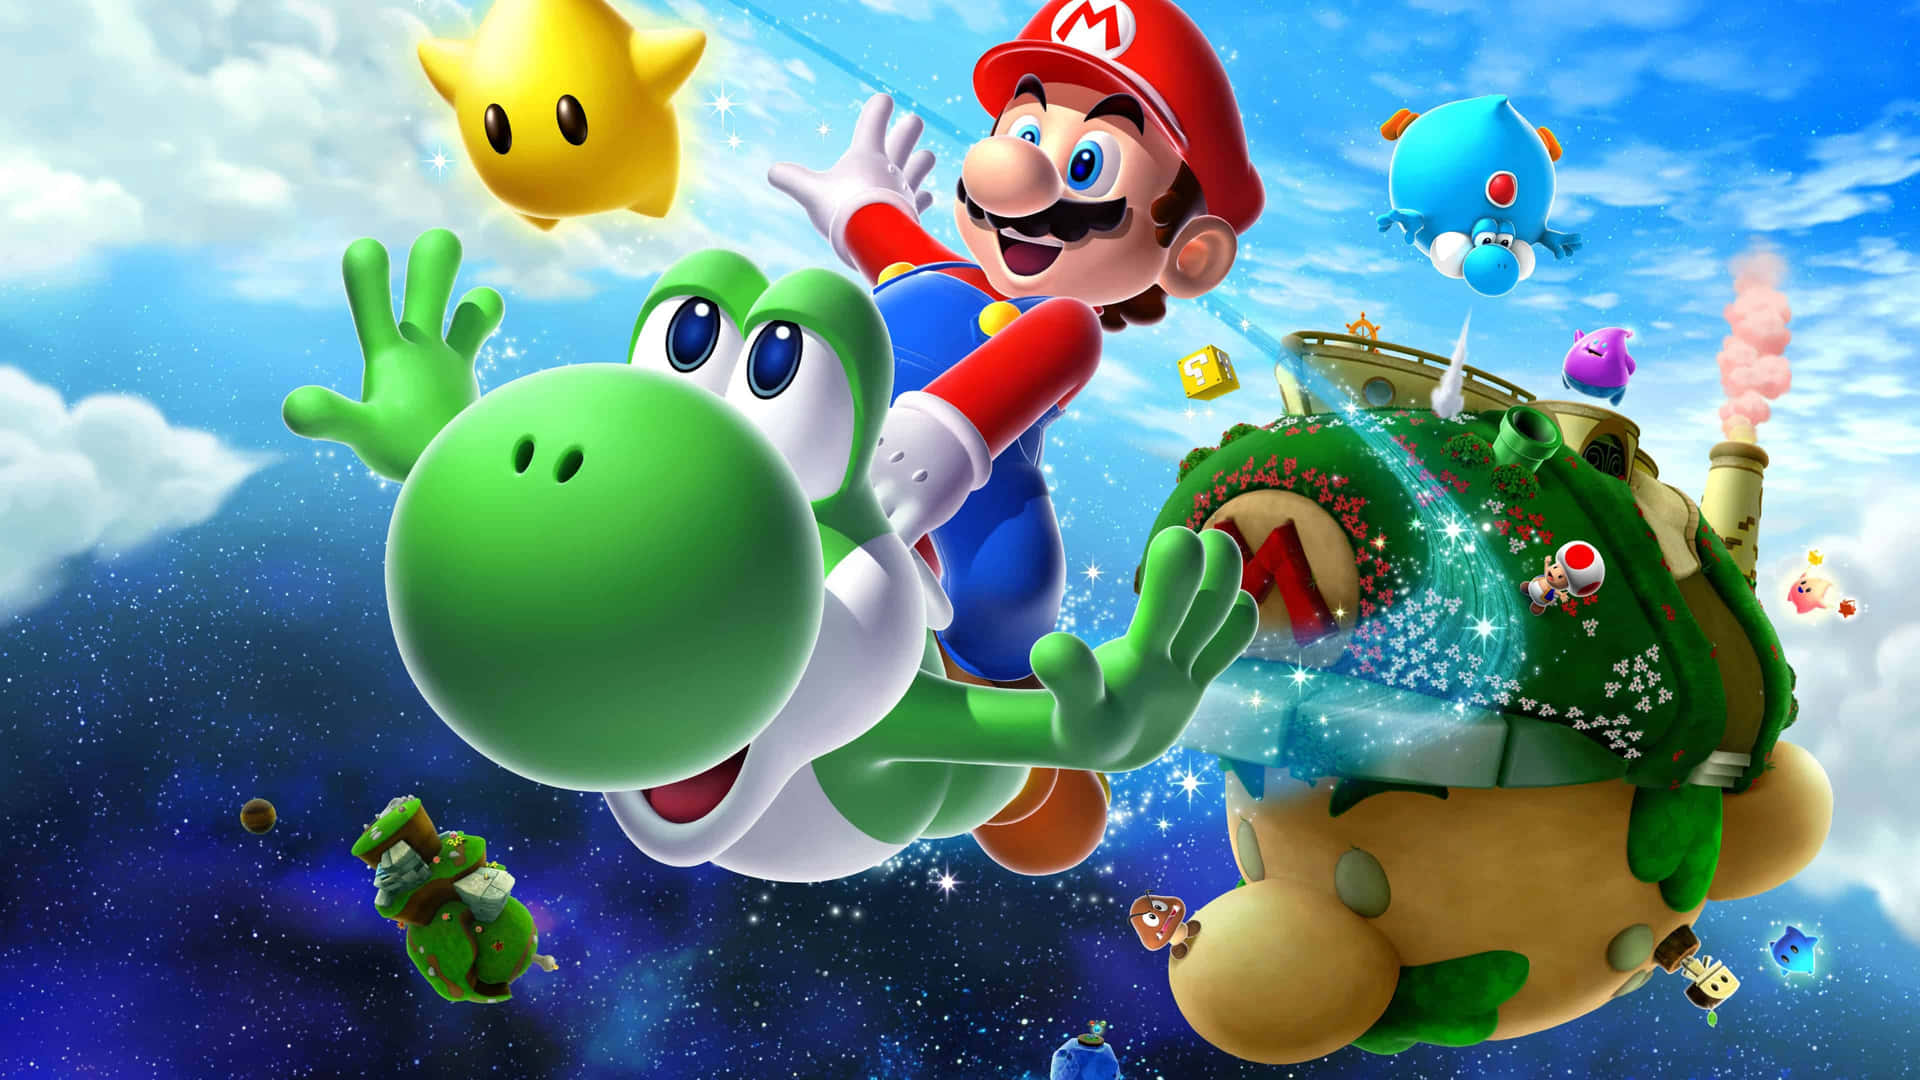 Explore the universe with Mario in Super Mario Galaxy! Wallpaper